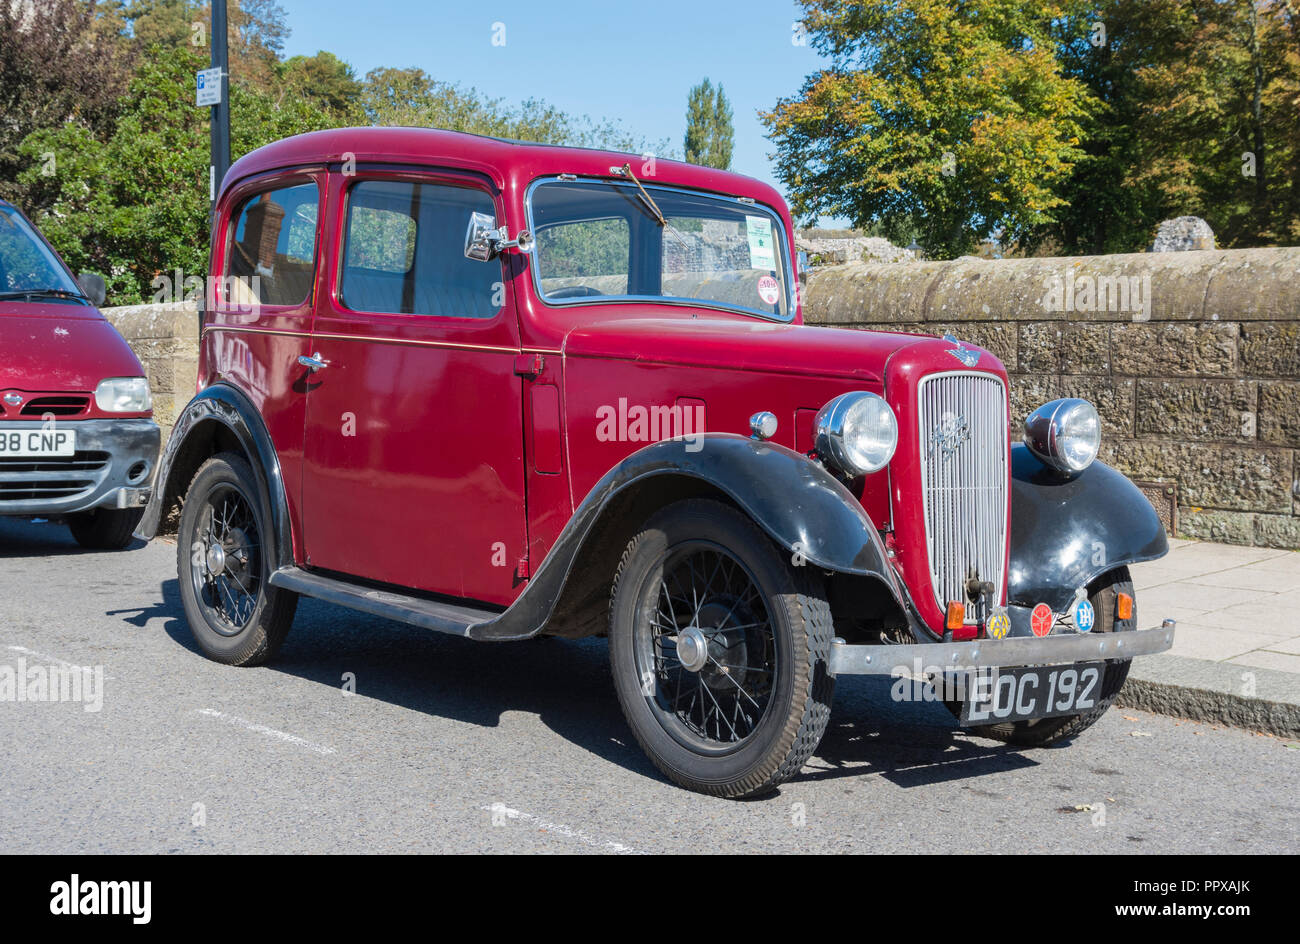 Austin Austin rouge sept (7) vintage de 1938 Salon de voiture garée sur le bord de la route au Royaume-Uni. Banque D'Images